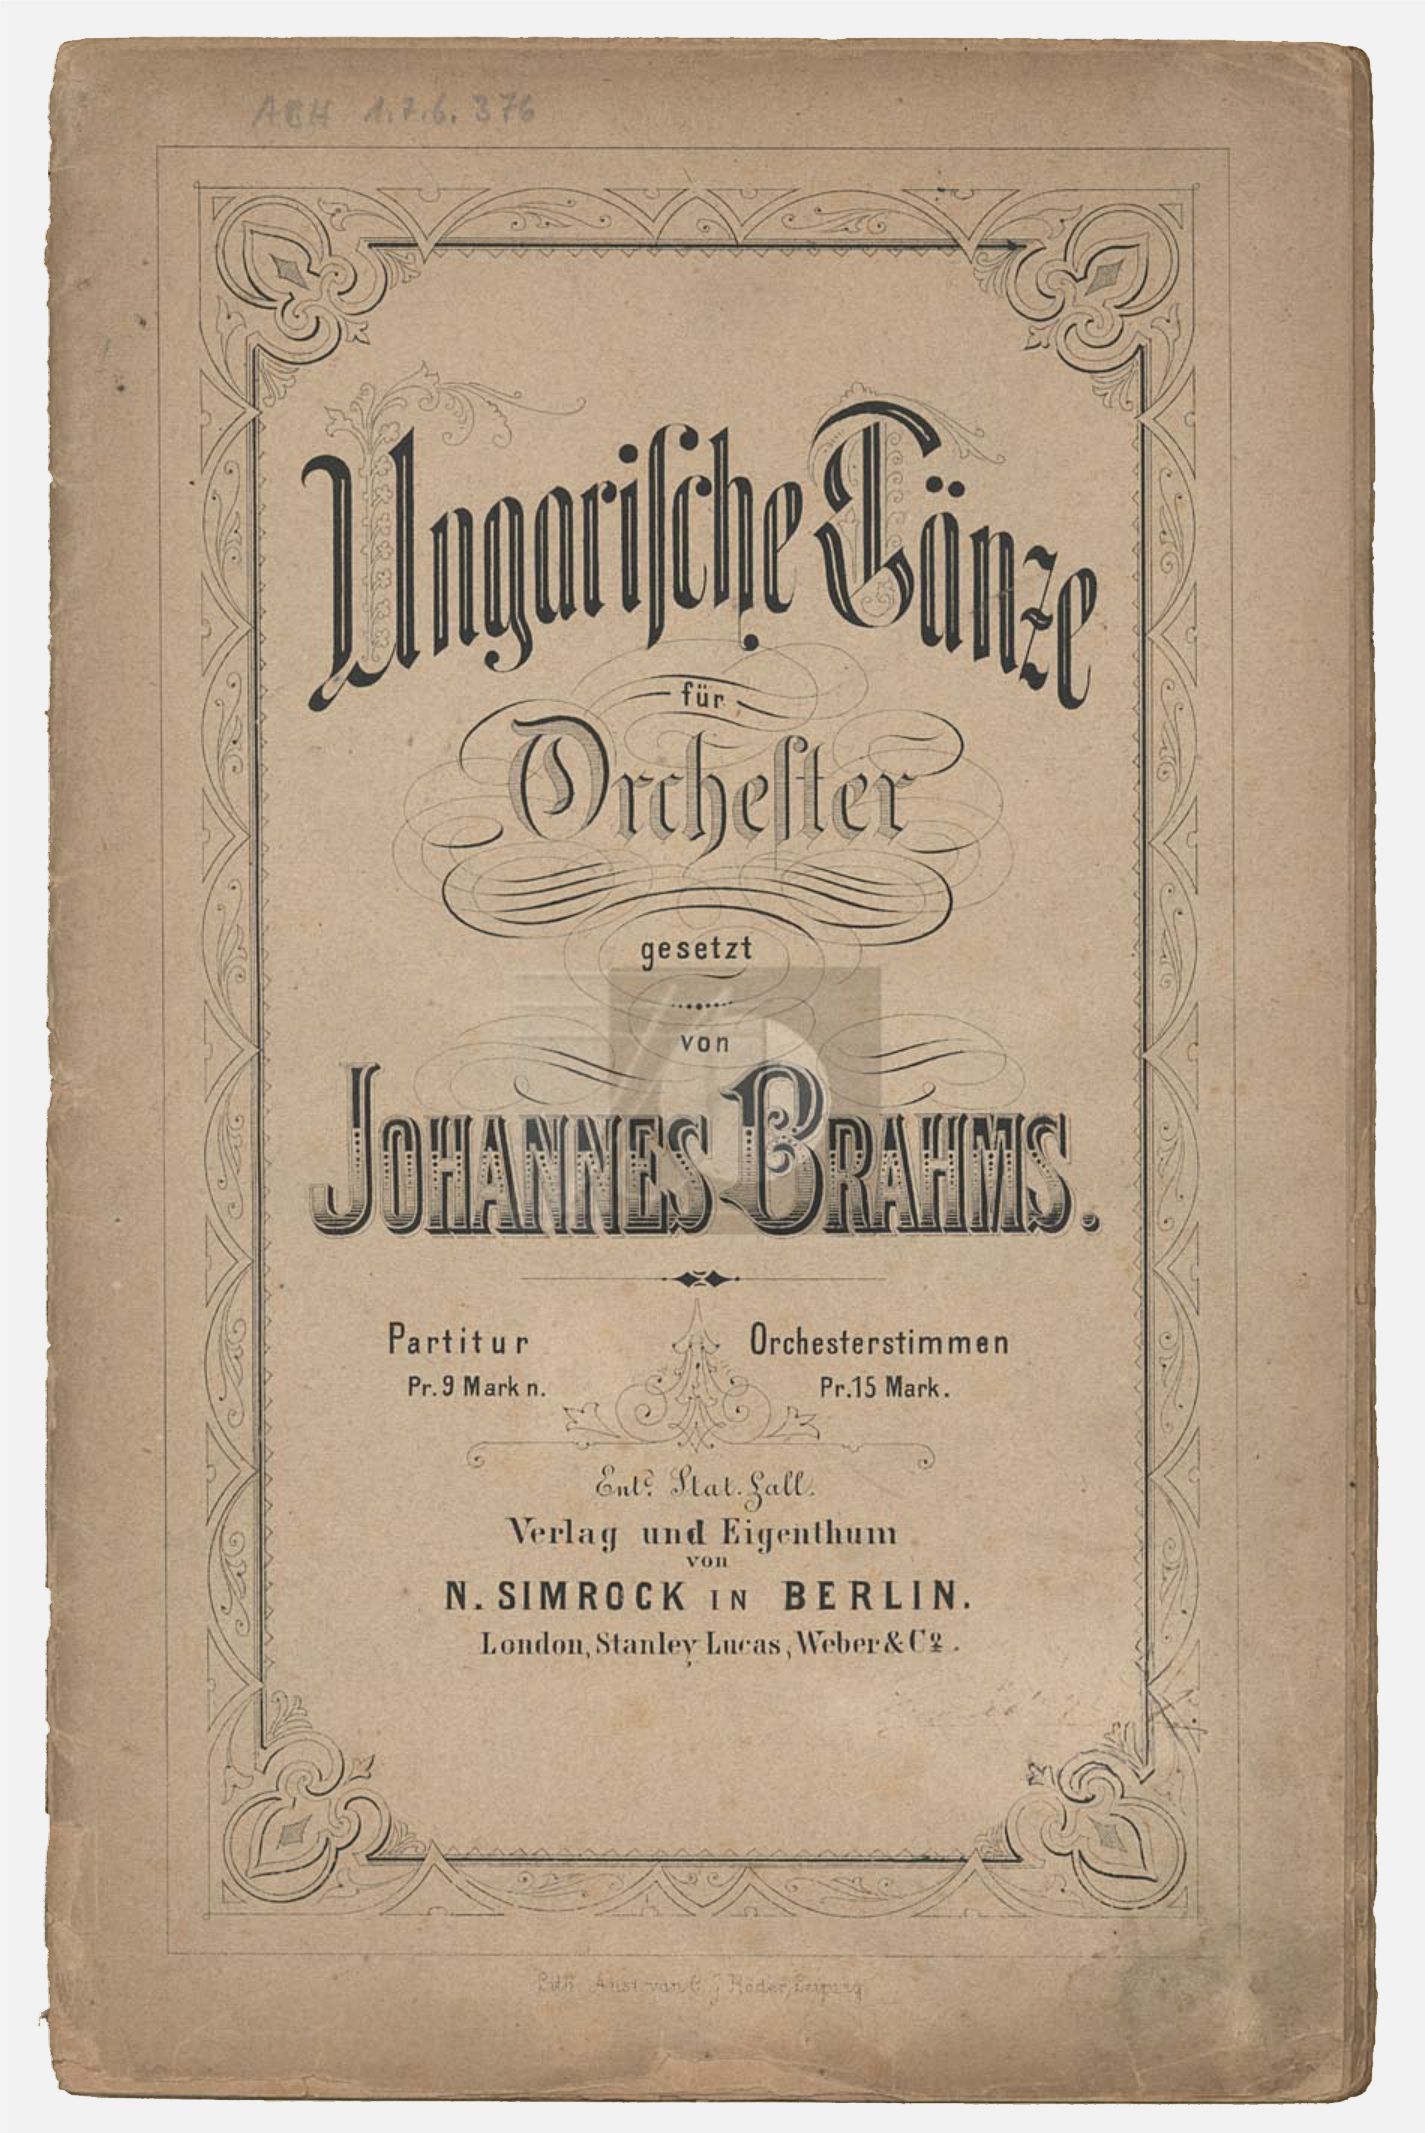 page couverture partition, première édition, Berlin, N. Simrock, n.d.(1874). Plate 7455, clicquer pour voir l'original